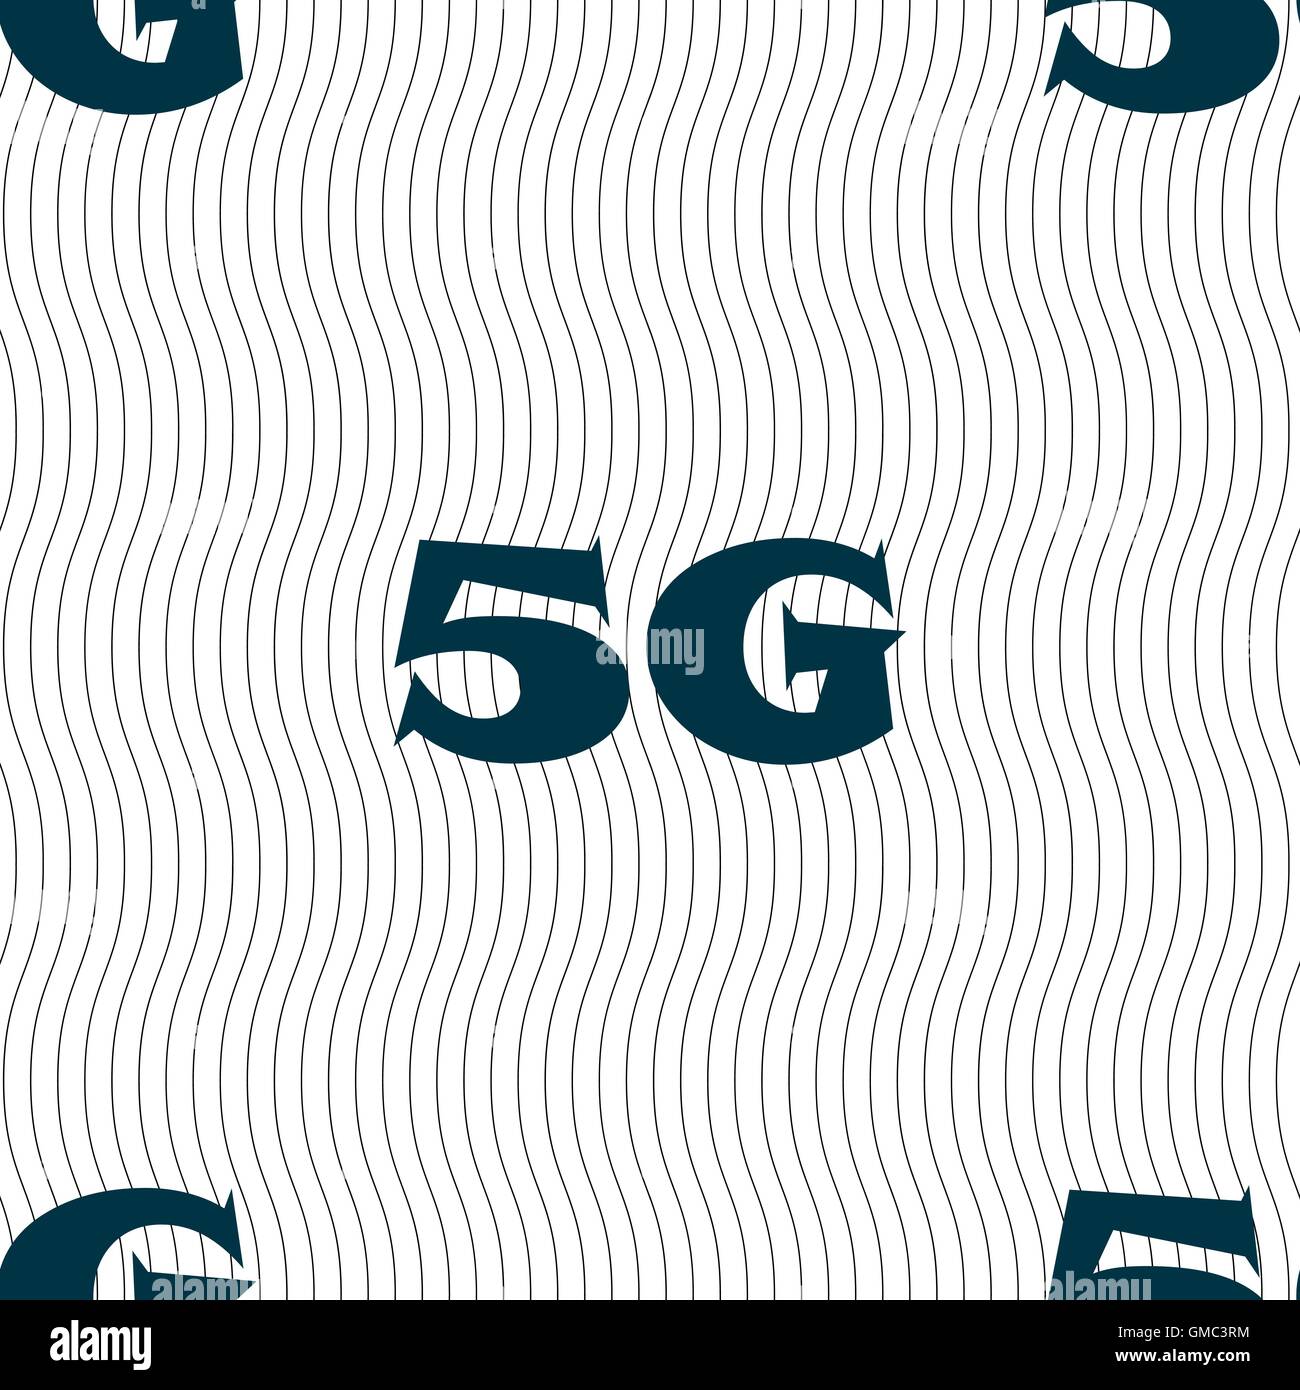 5G Zeichen Symbol. Mobilfunk-Technologie-Symbol. Nahtlose Muster mit geometrischen Struktur. Vektor Stock Vektor